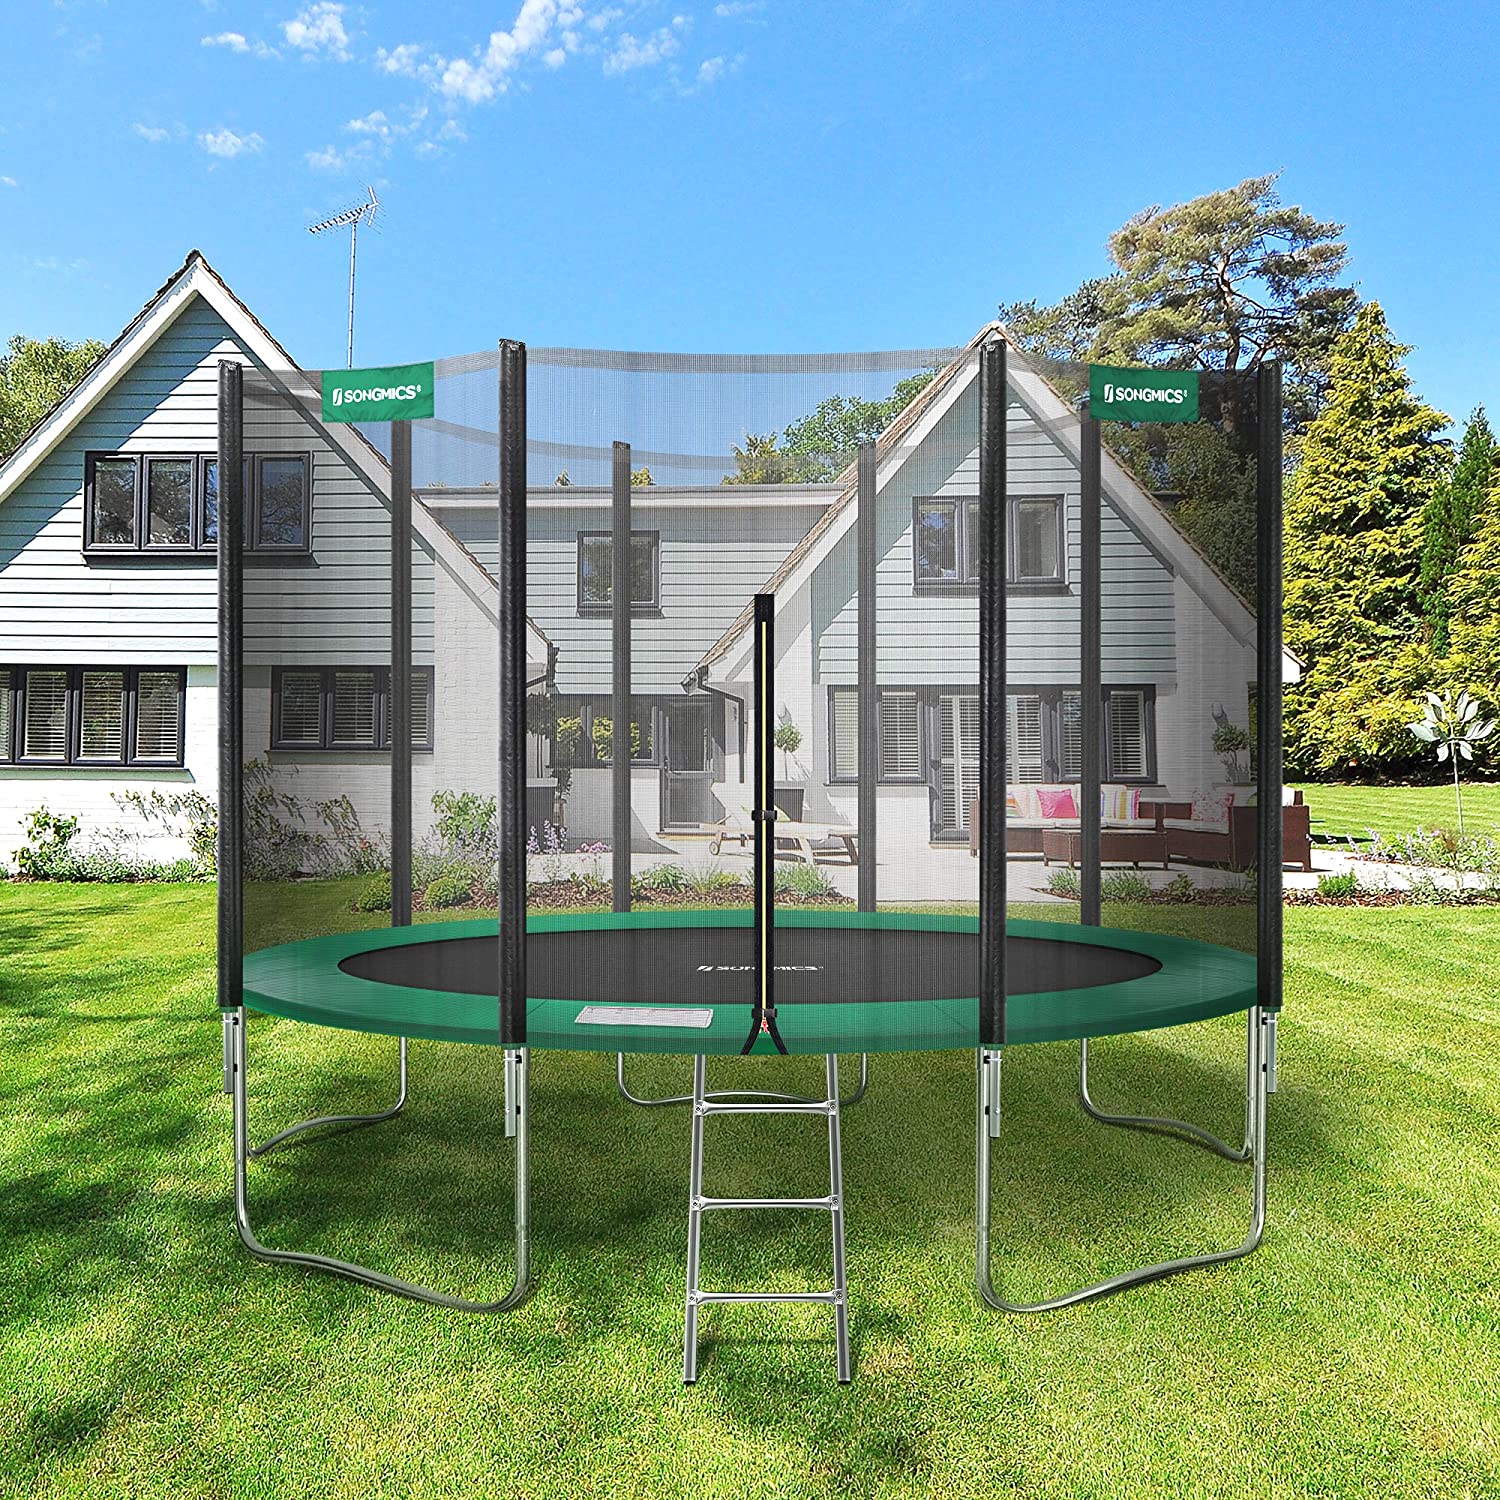 Rund trampolin med stige, sikkerhedsnet, TÃV Rheinland sikkerhedstestet, sort og mørkegrøn